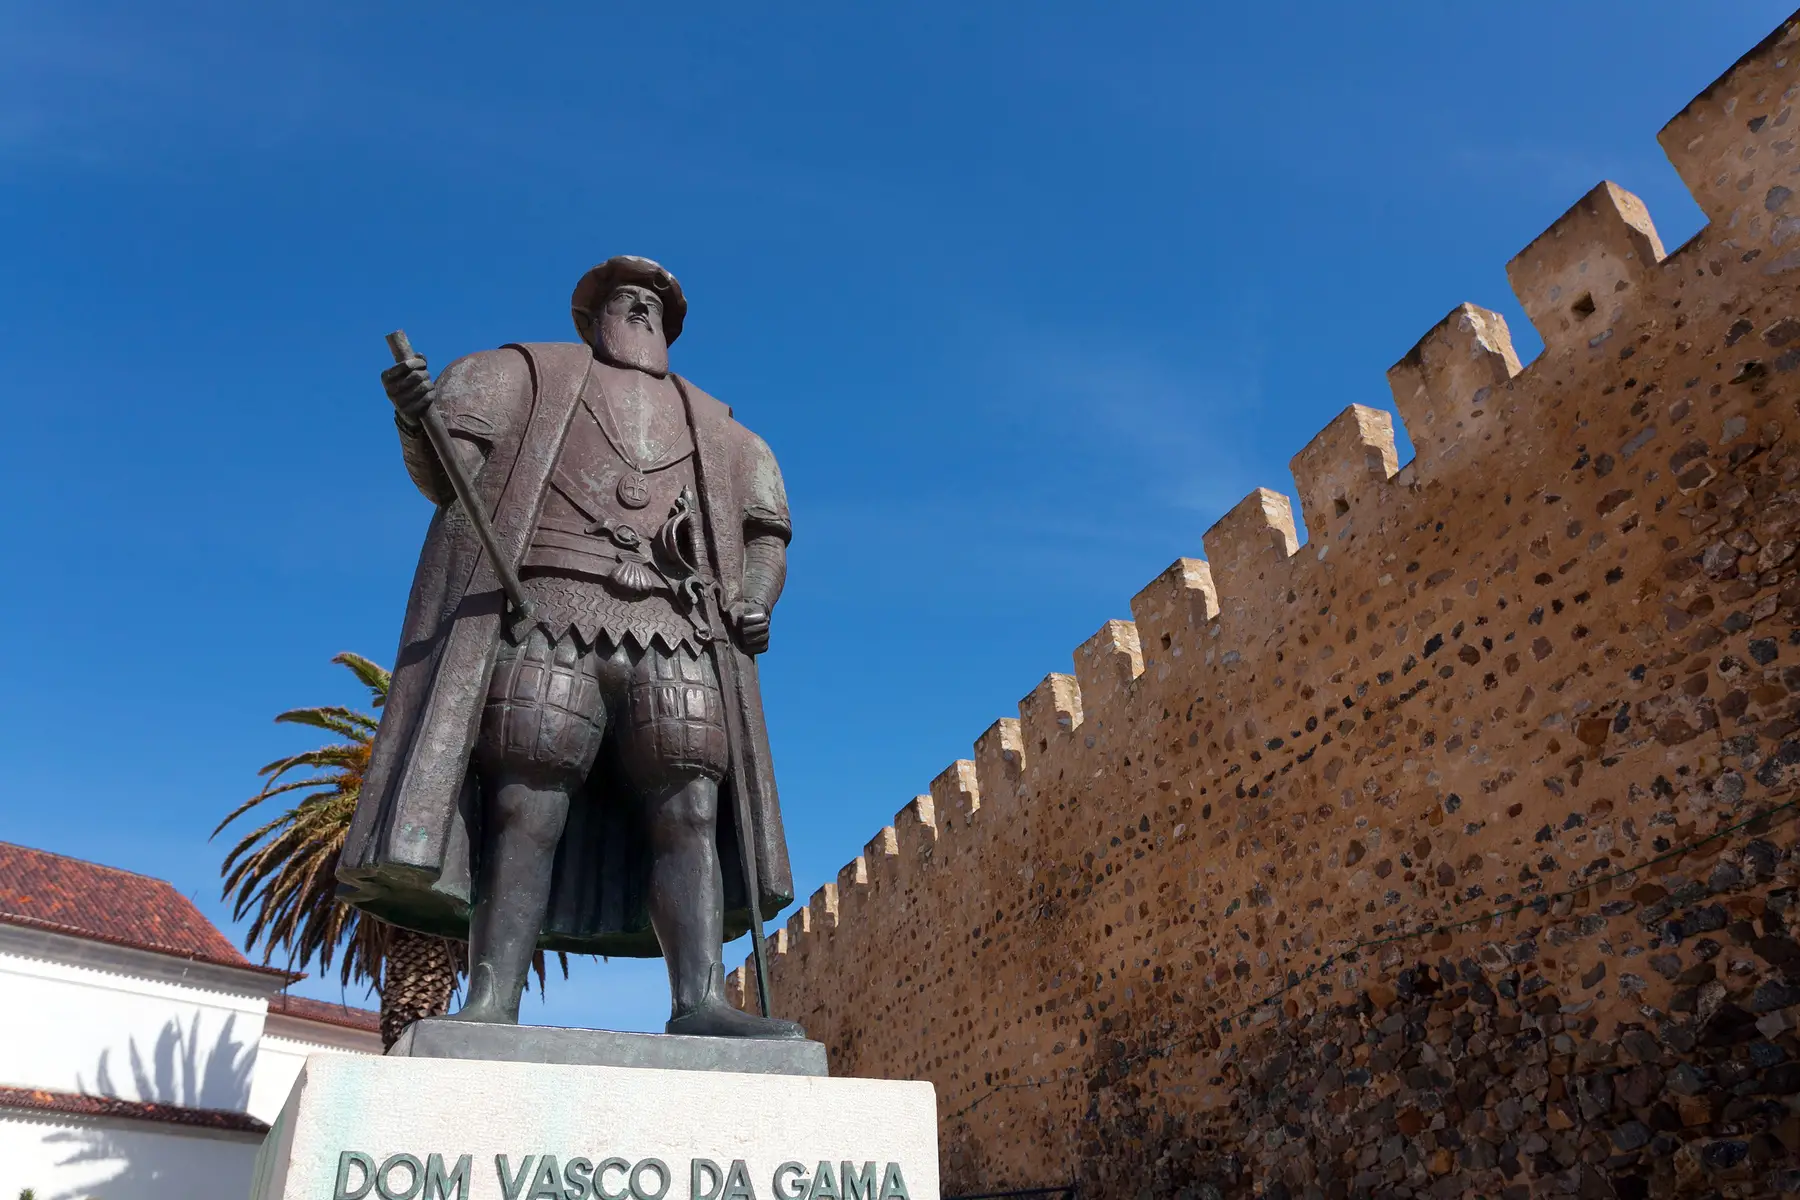 Vasco de Gama statue